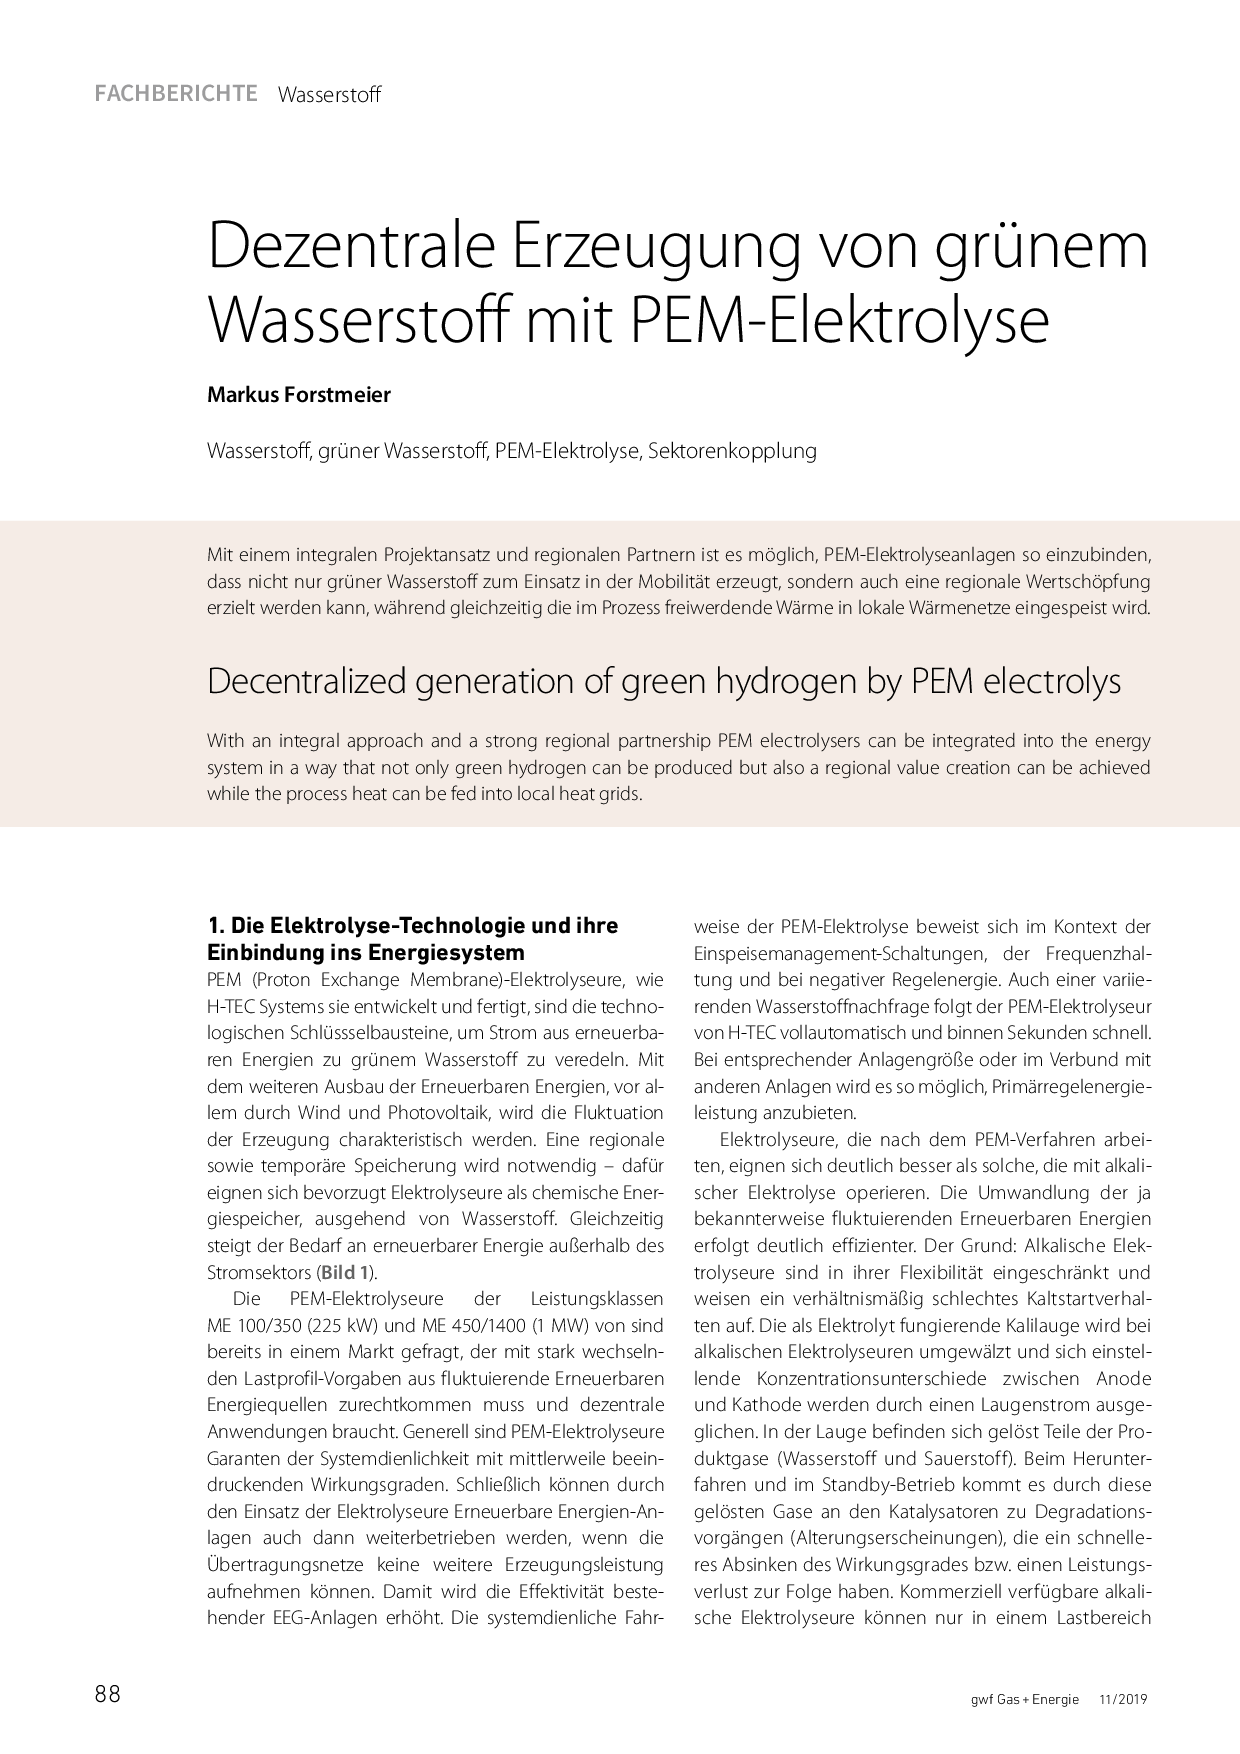 Dezentrale Erzeugung von grünem Wasserstoff mit PEM-Elektrolyse